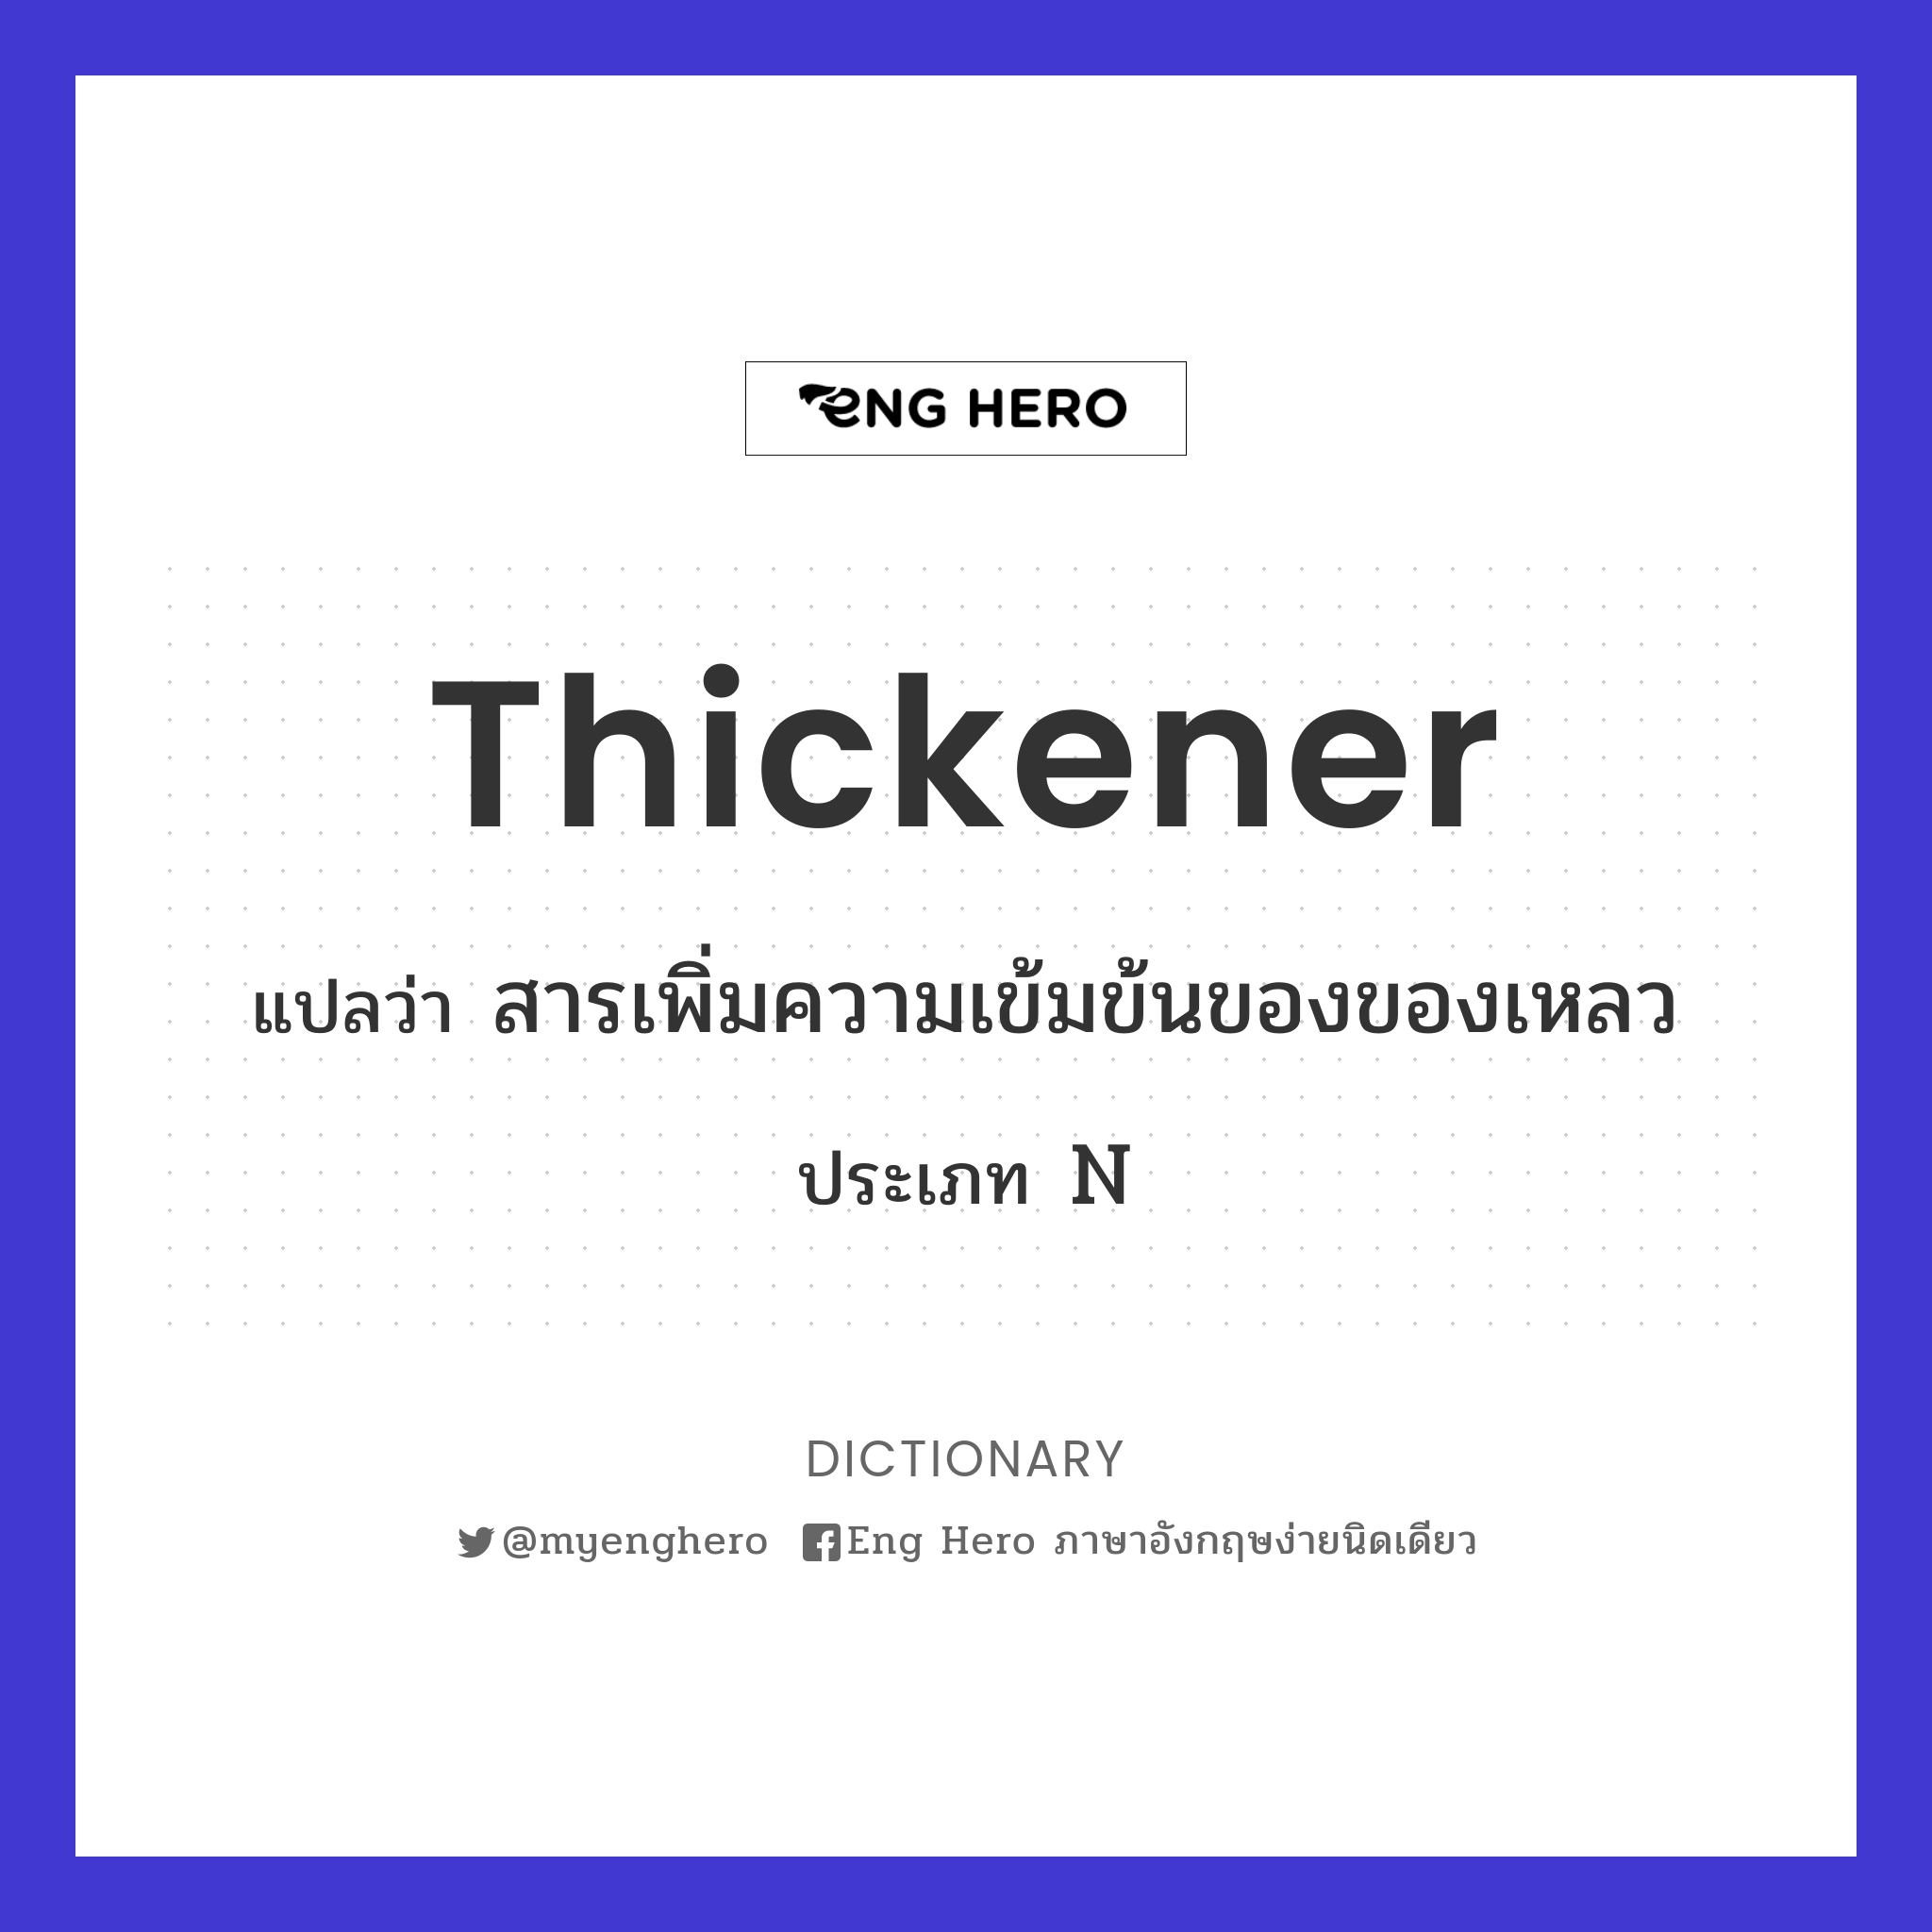 thickener